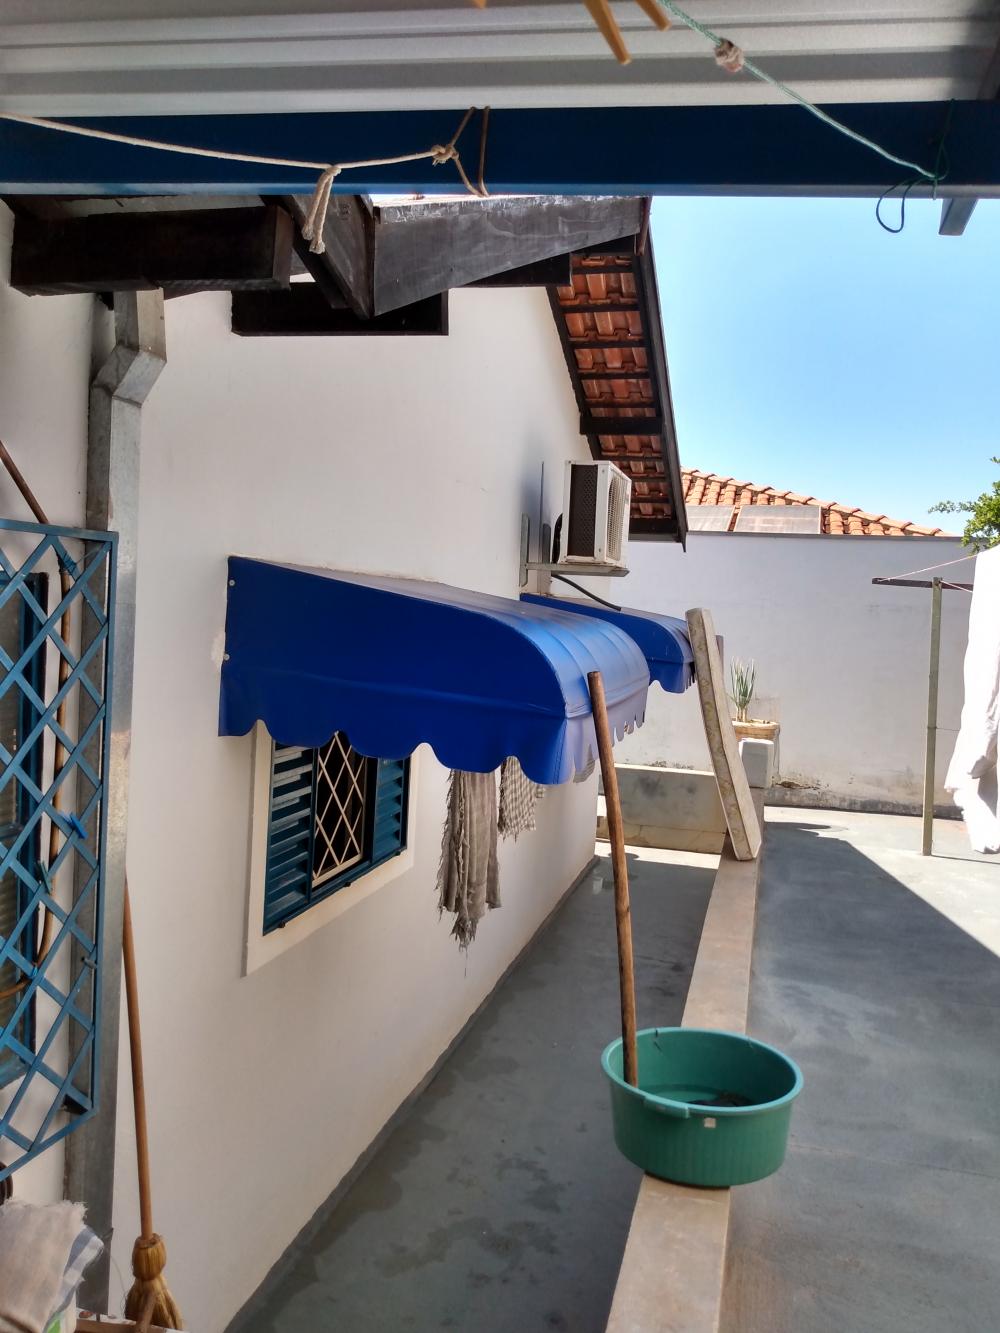 Alugar Casa / Padrão em São José do Rio Preto apenas R$ 850,00 - Foto 16